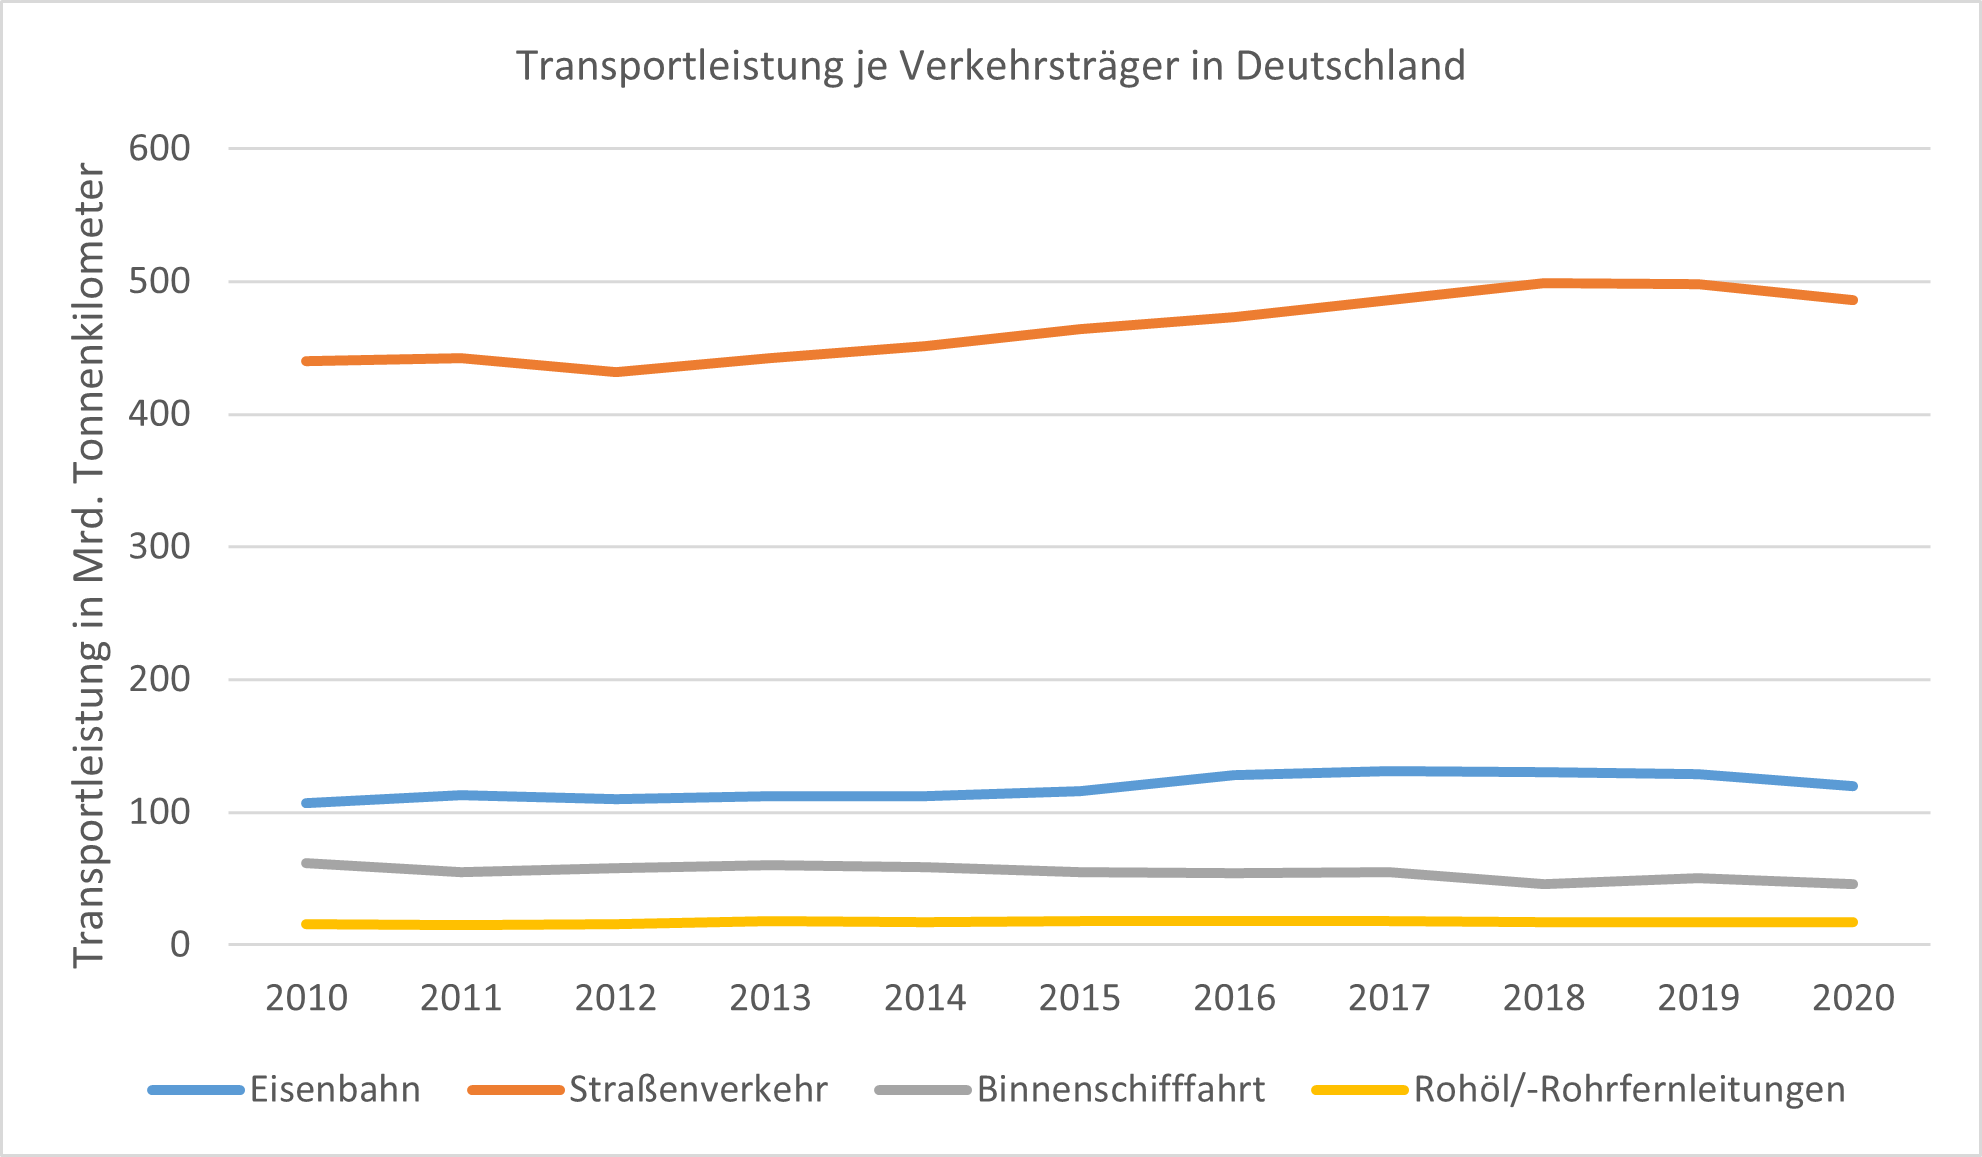 Entwicklung der Guterverkehrsleistung im Modal Split Vergleich 306347.png